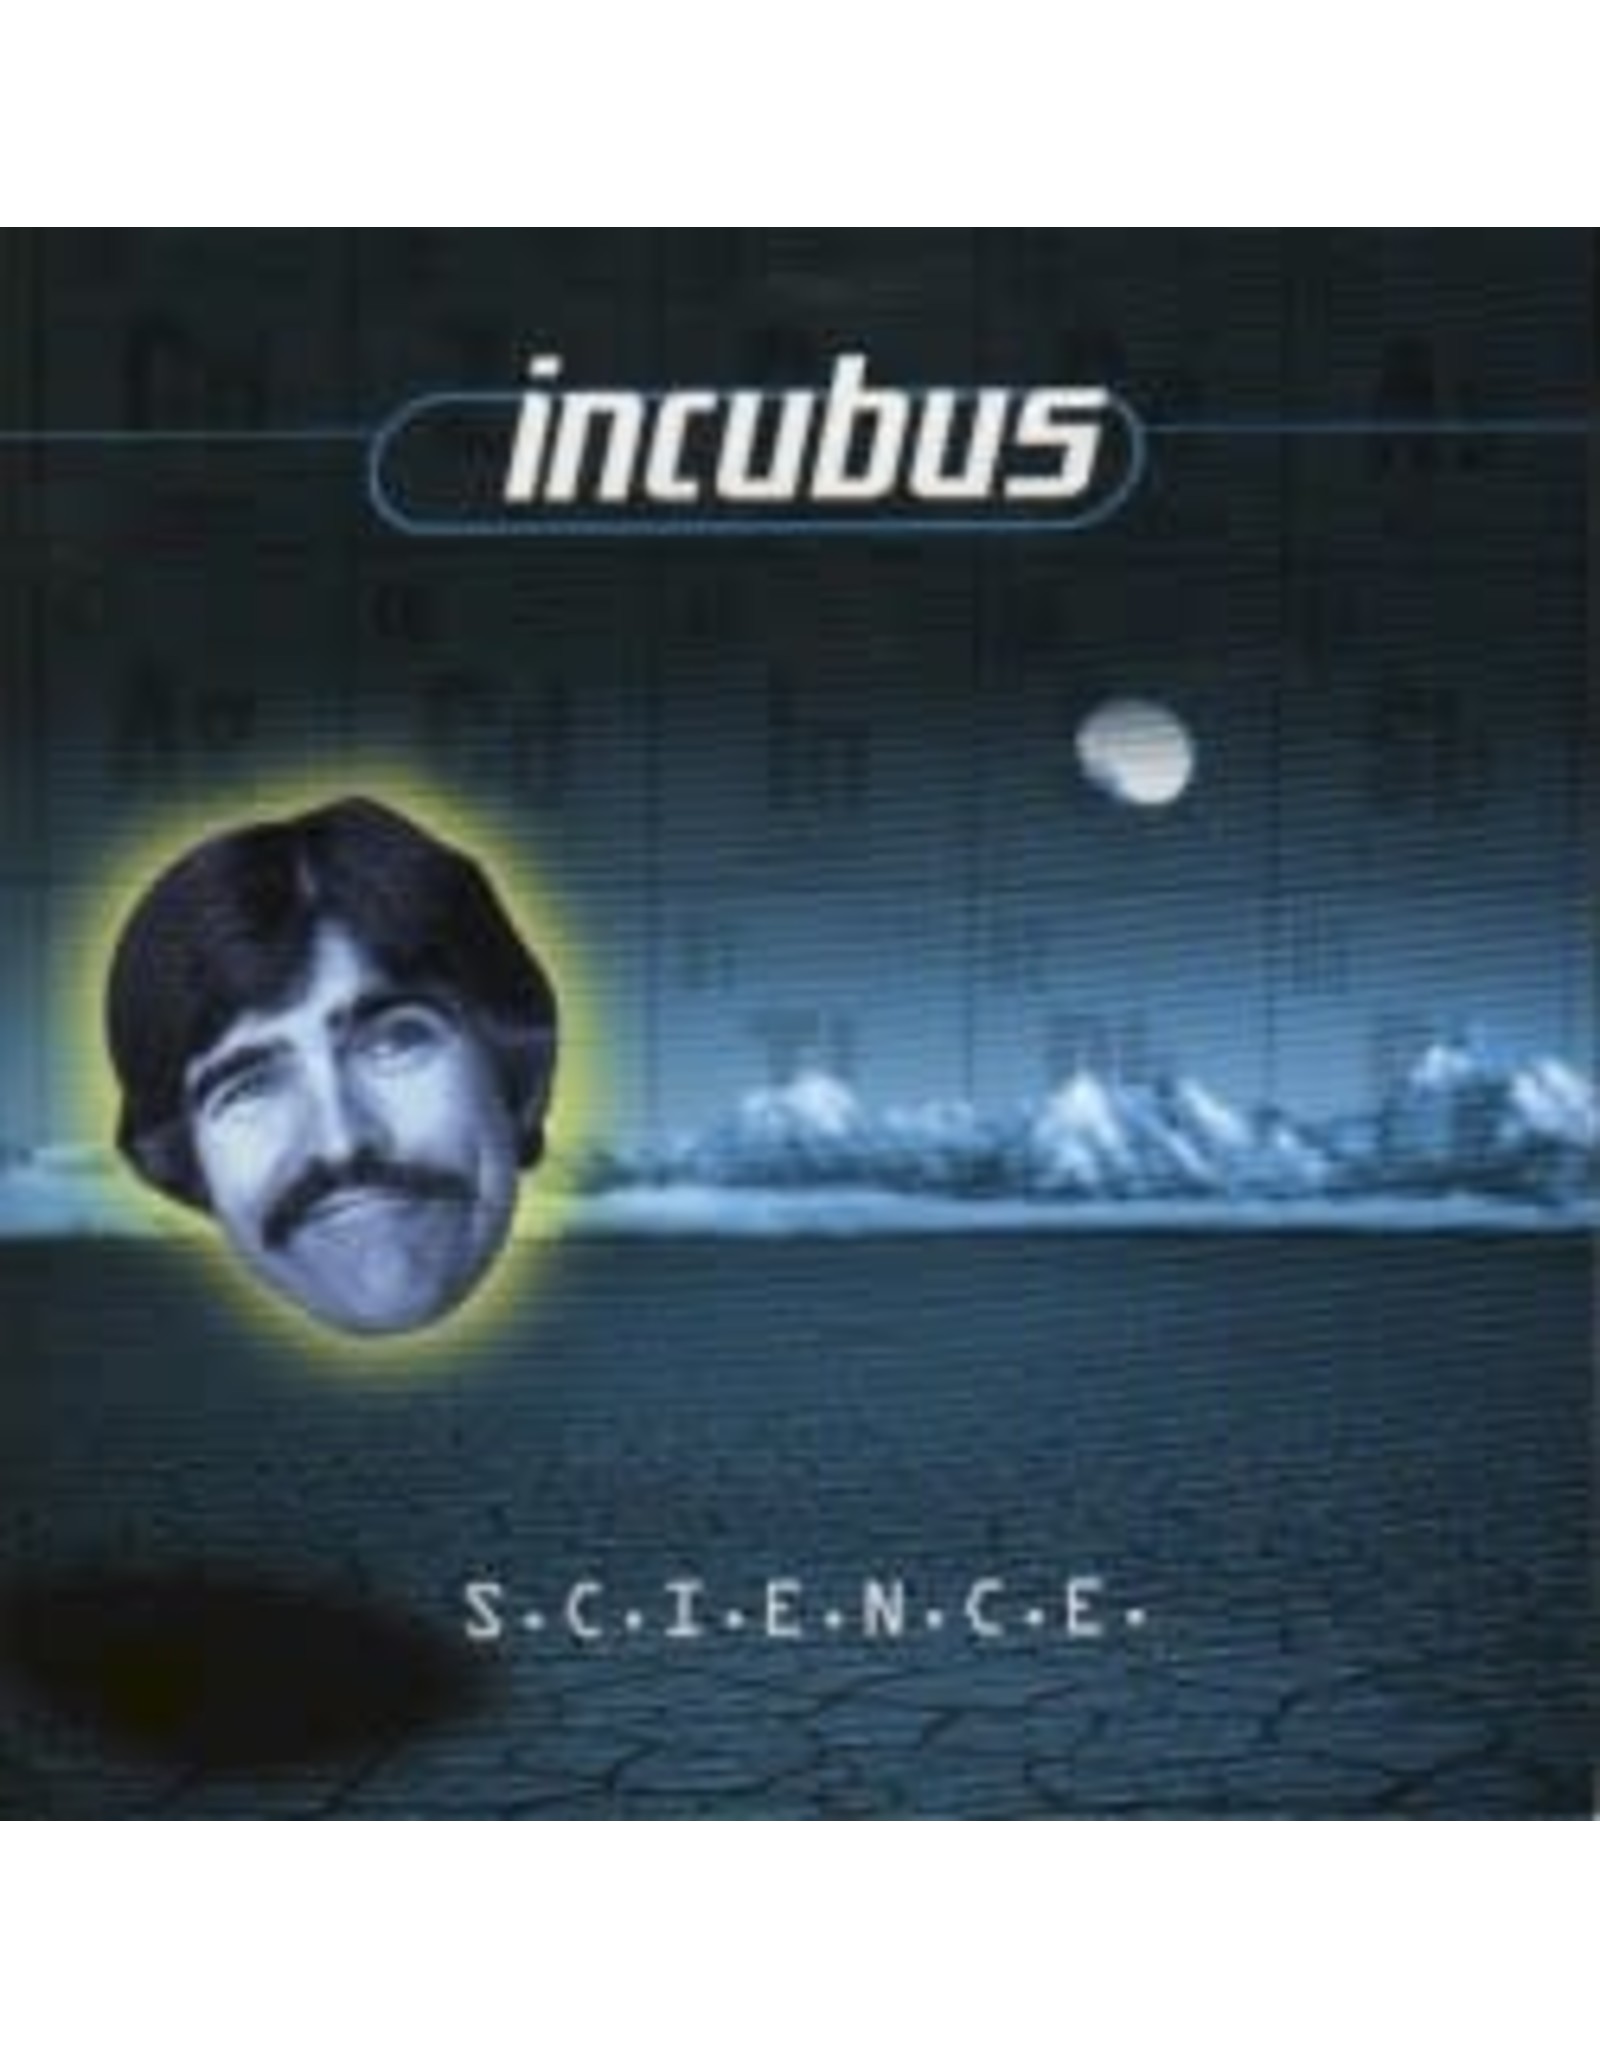 Incubus - S.C.I.E.N.C.E.  LP (180 gram Music On Vinyl)